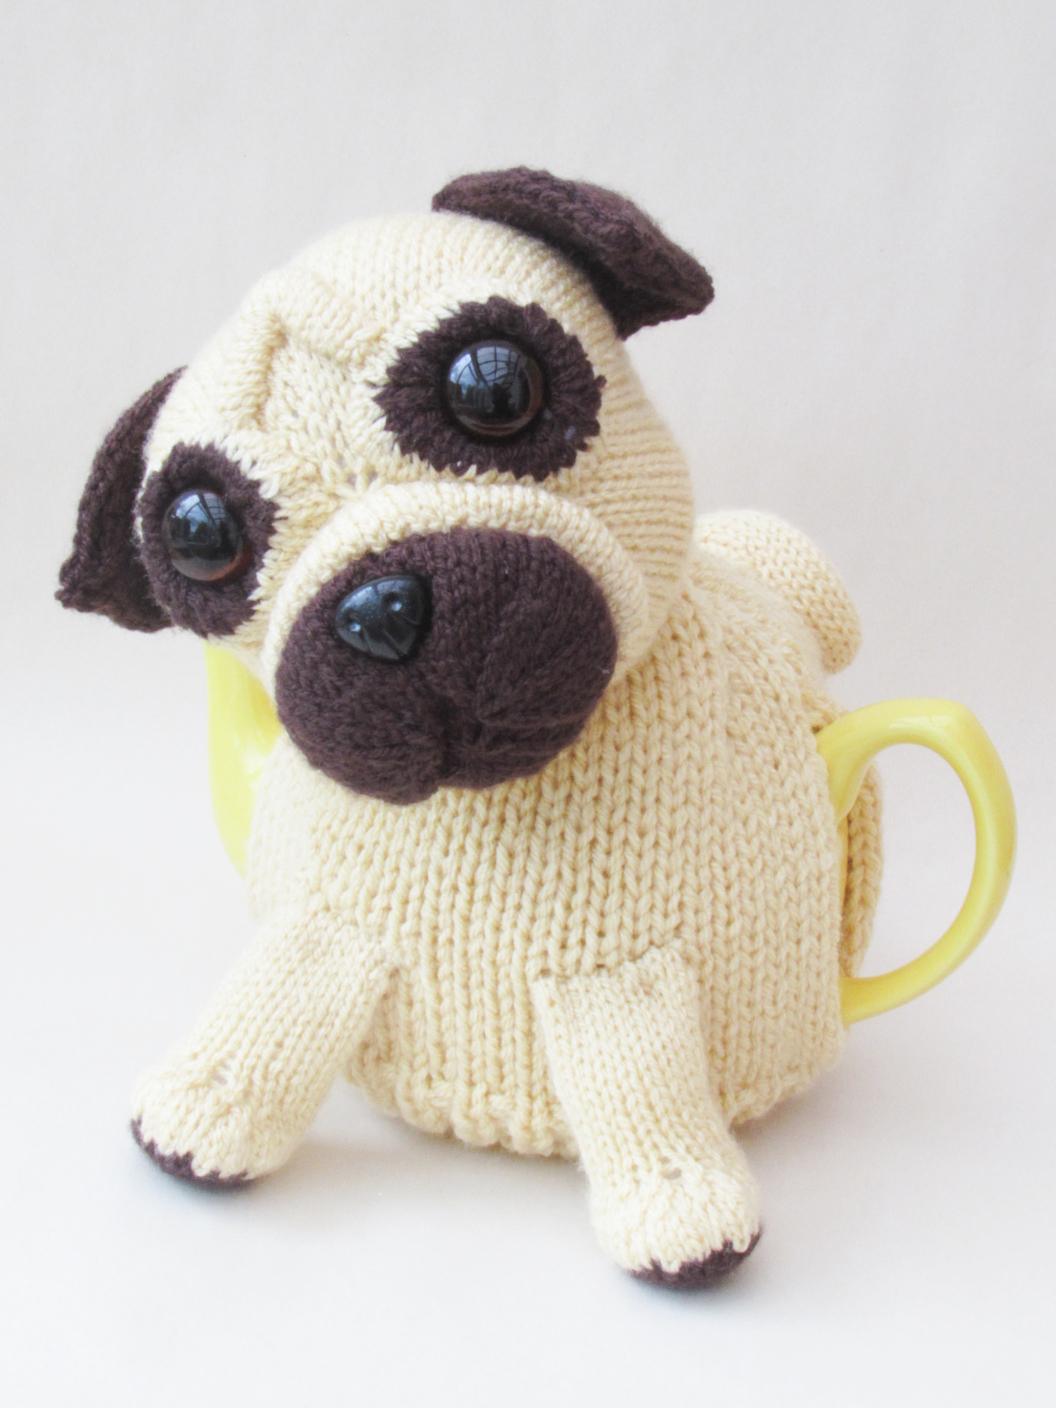 Pet Pug knitting pattern